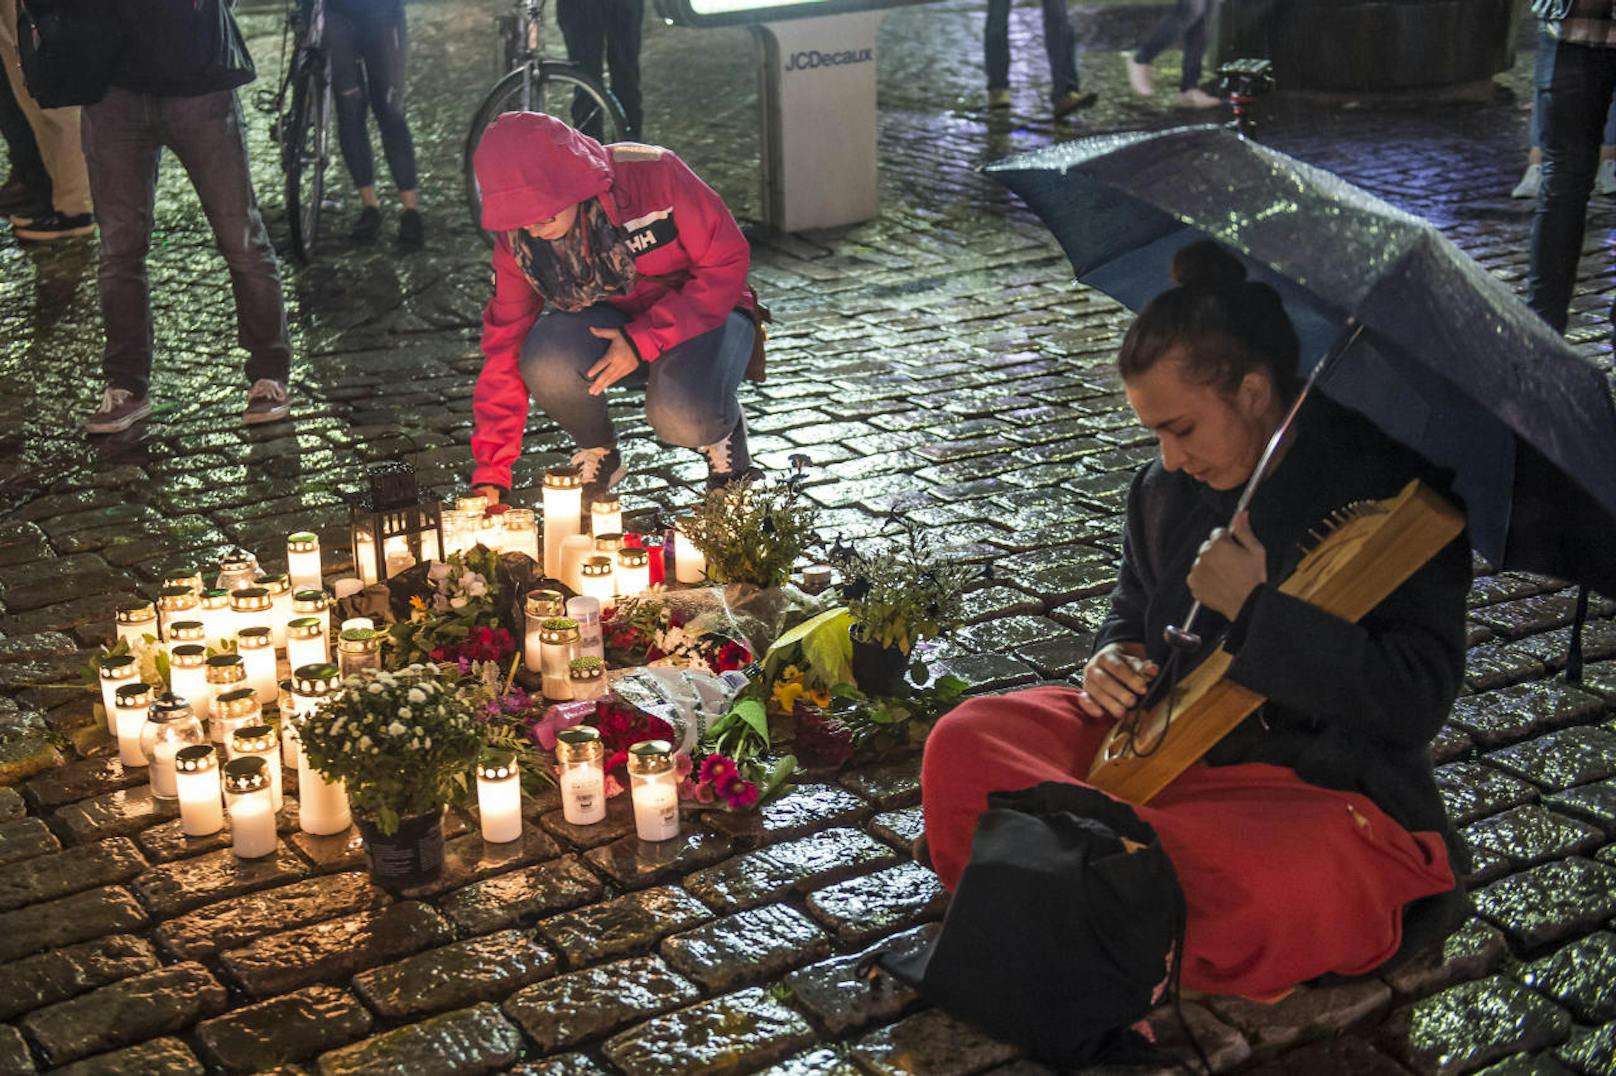 In der Innenstadt von Turku war am Freitag (18. August), nur einen Tag nach dem Terroranschlag in Barcelona, plötzlich ein junger Mann mit einem Messer aus Passanten losgegangen.